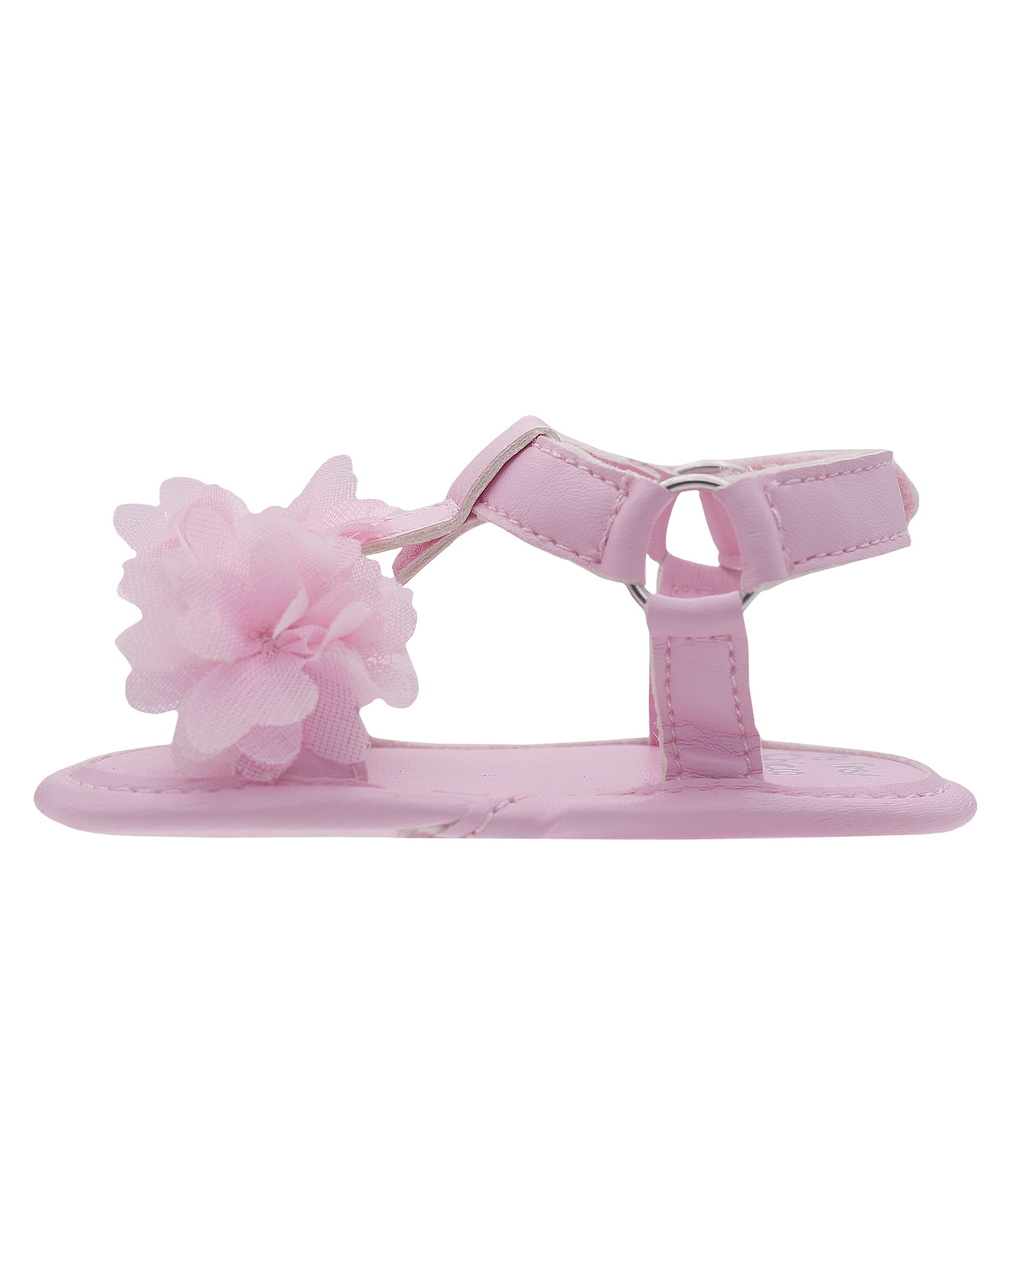 Sandalo olessia per neonate - Chicco